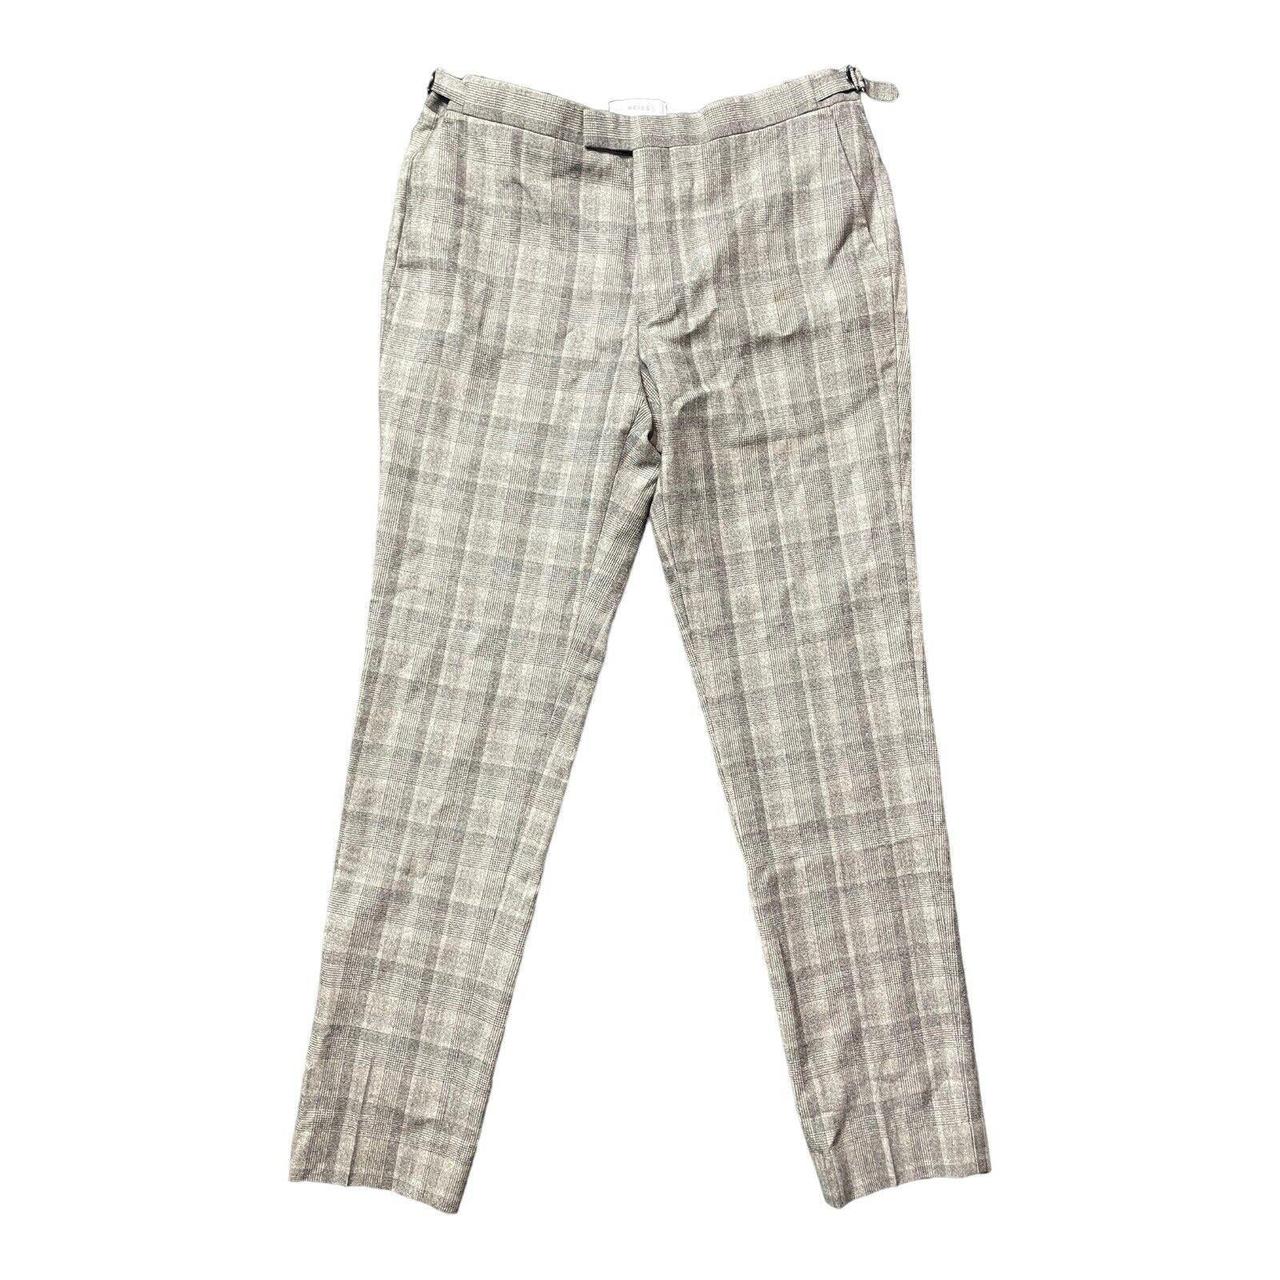 Reiss Oxshott Men's Smart Trousers Size - W... - Depop